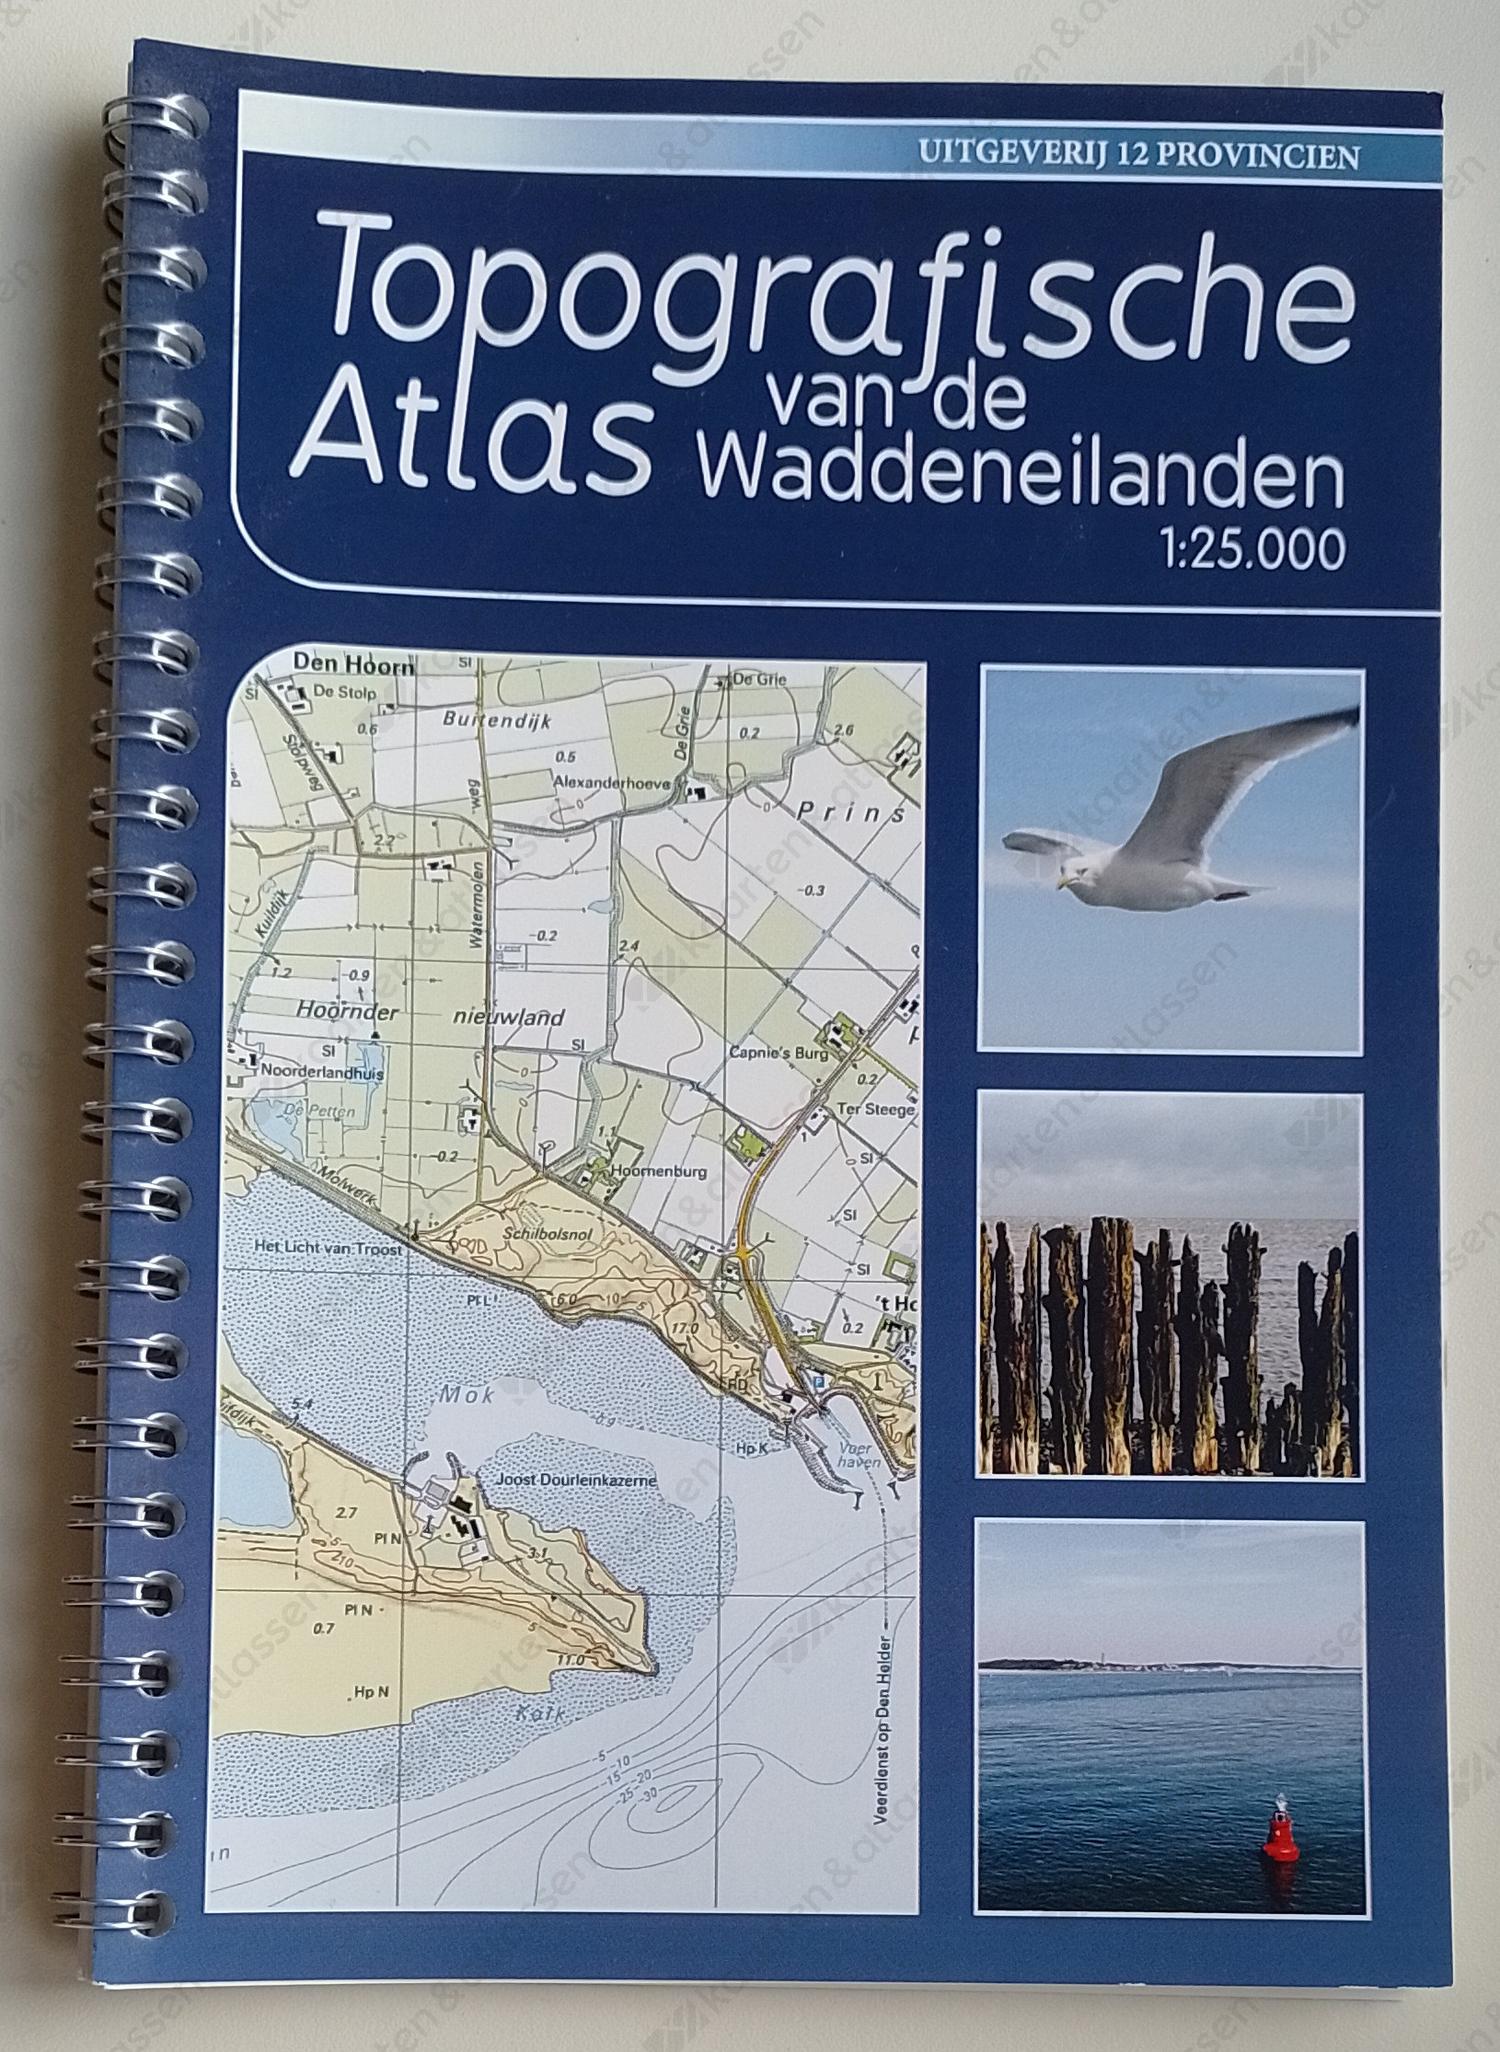 Topografische Atlas Waddeneilanden 1:25.000